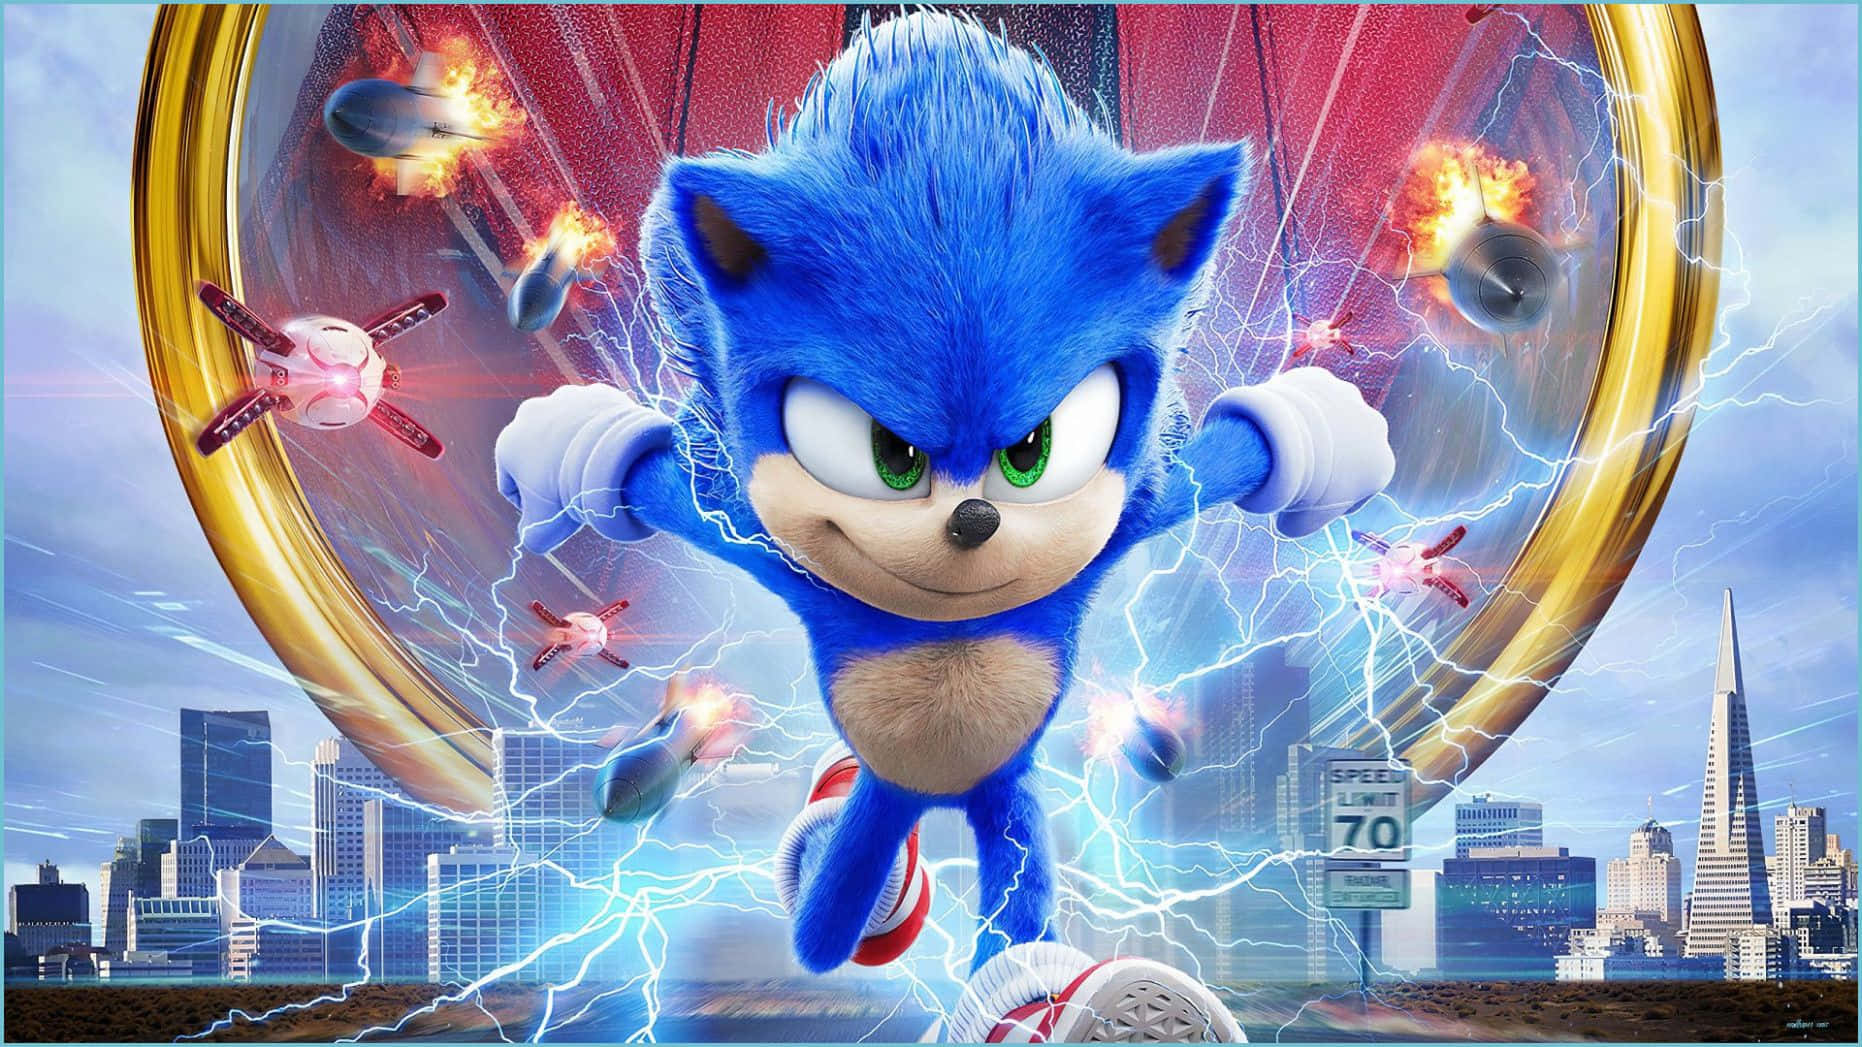 Sonicthe Hedgehog Återvänder Med En Explosion Av Hd 4k Färg! Wallpaper